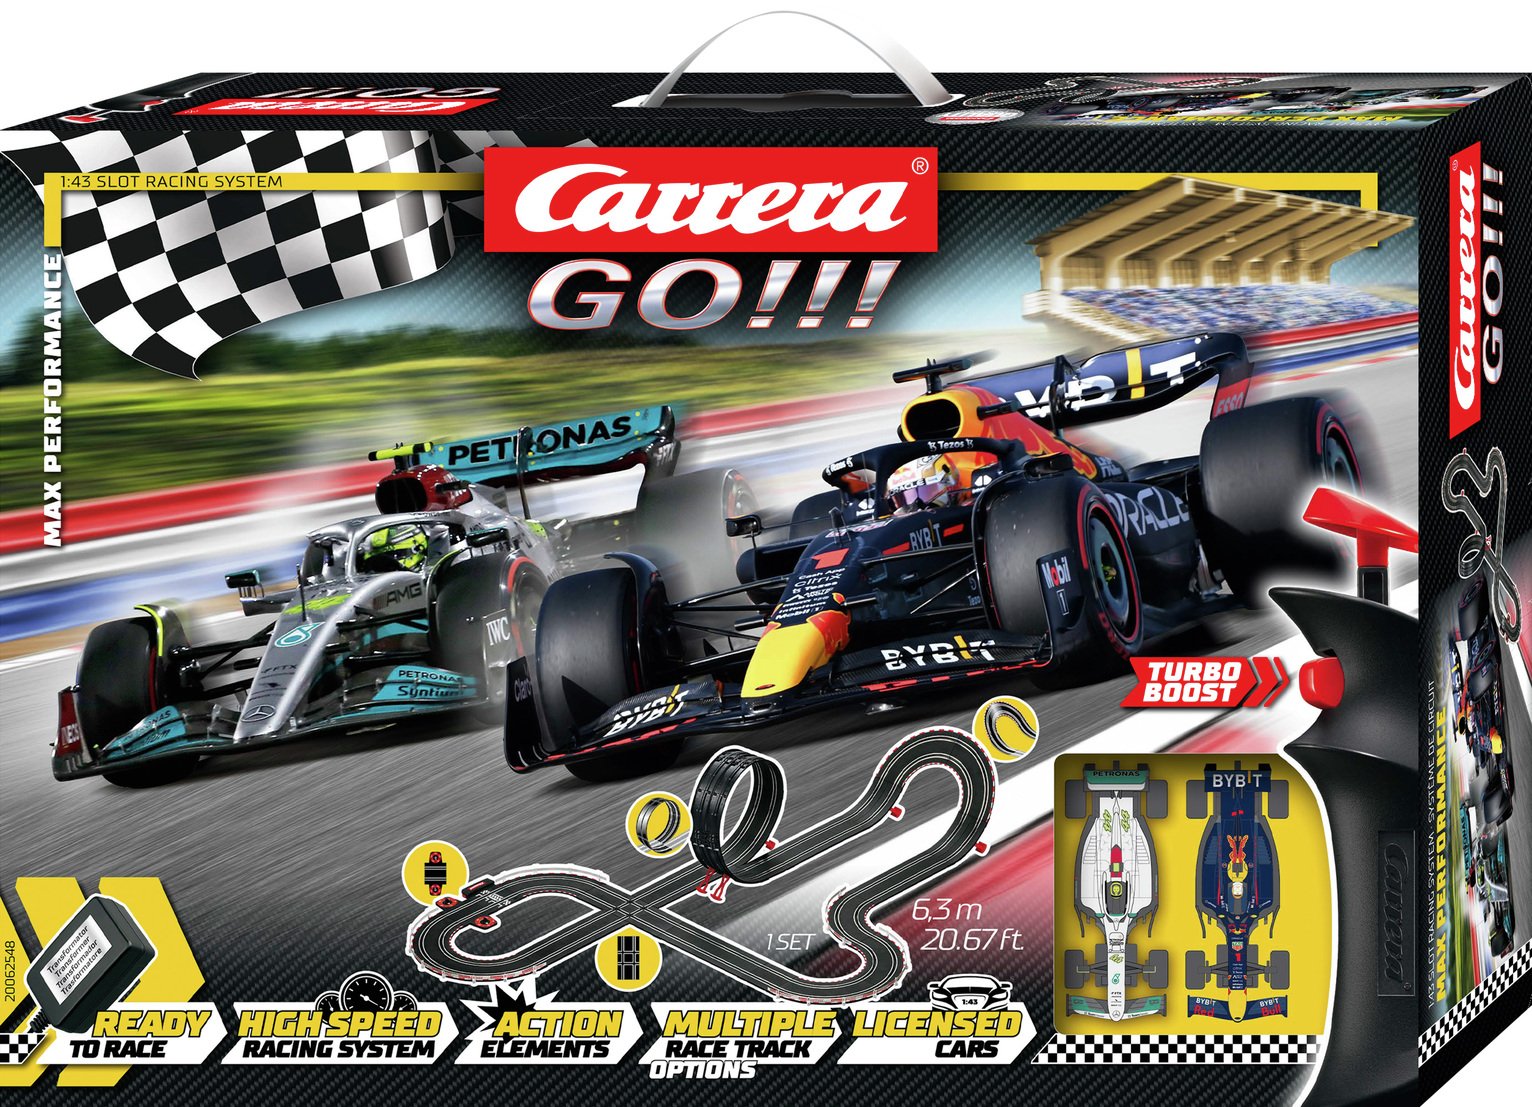 Carrera GO!!! Max Performance 2022 F1 Slot Racing Set (6.3m)